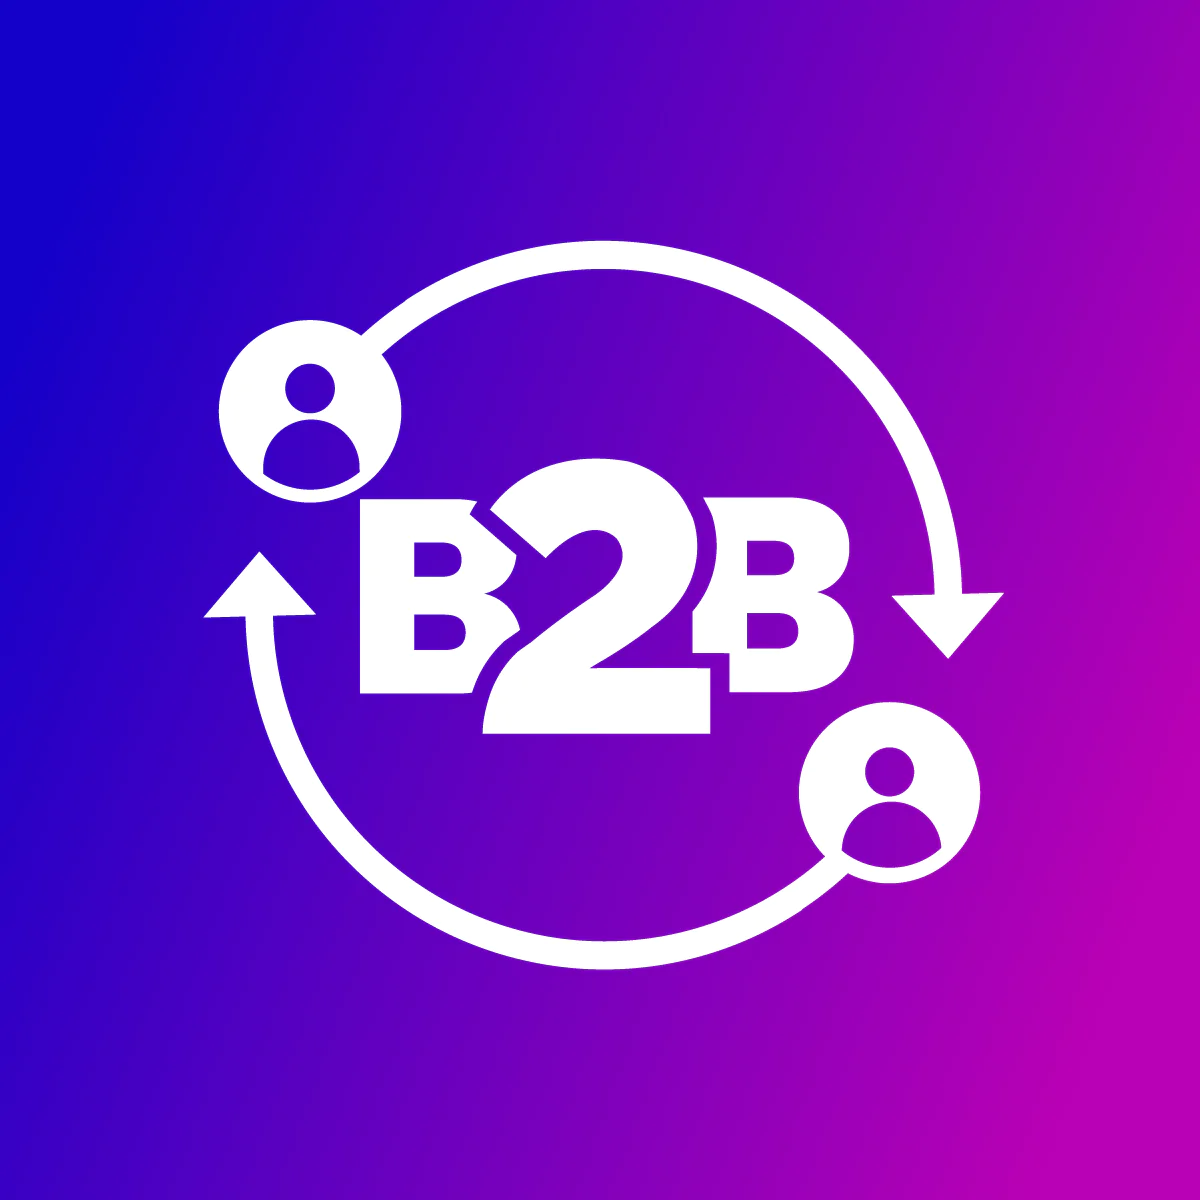  B2B Portal/ Net Terms